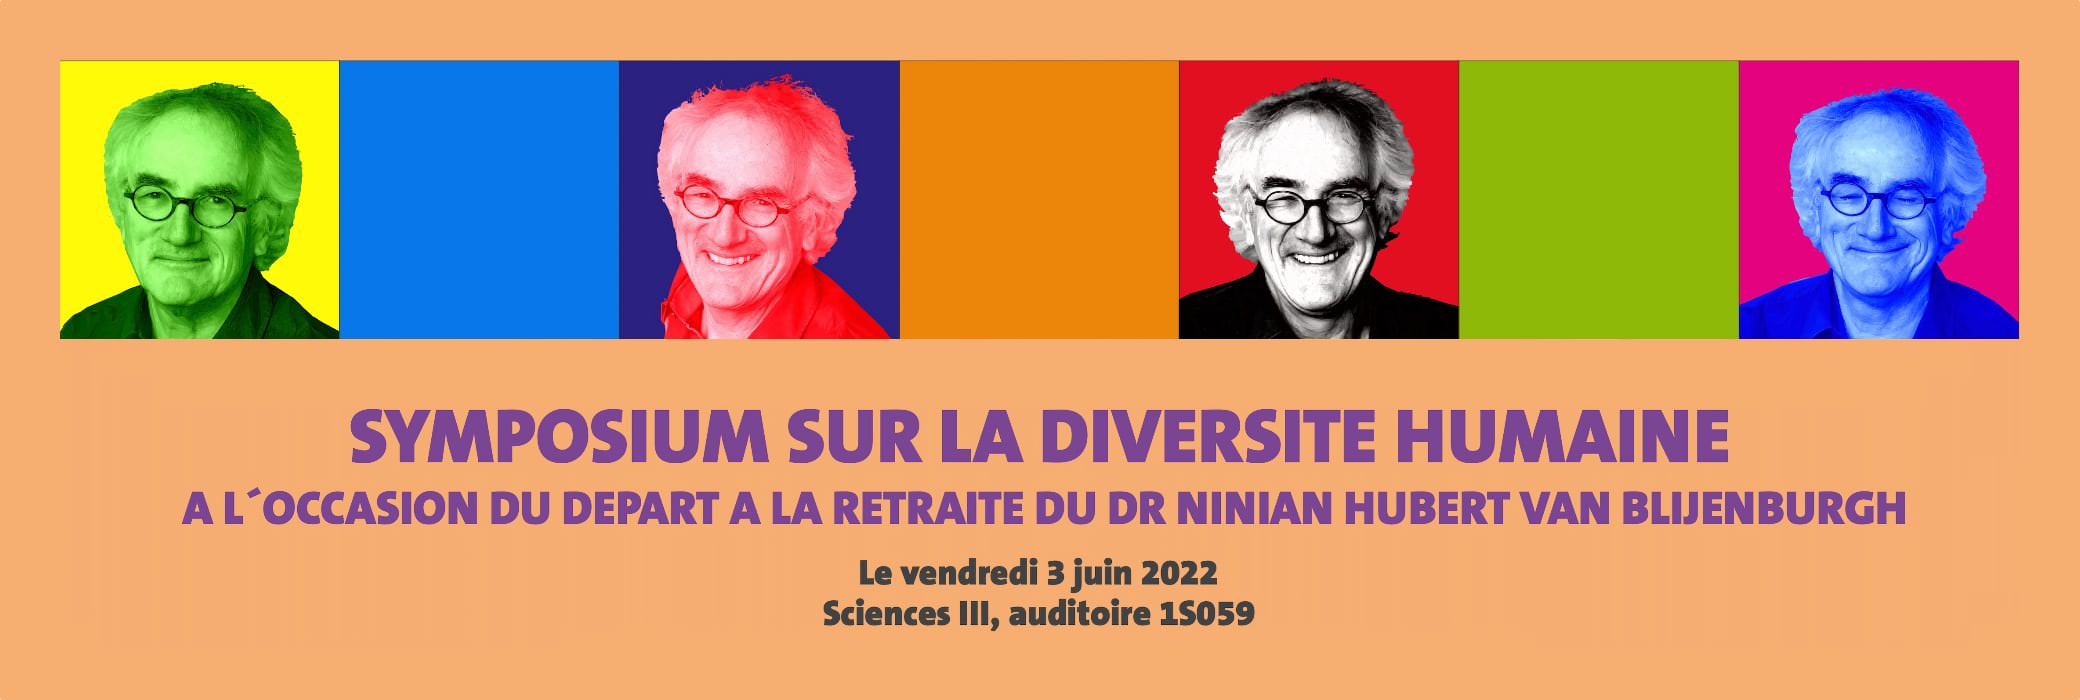 L'autre n'est qu'autre: symposium sur la diversité humaine à l'occasion de la retraite du Dr Ninian Hubert van Blijenburgh